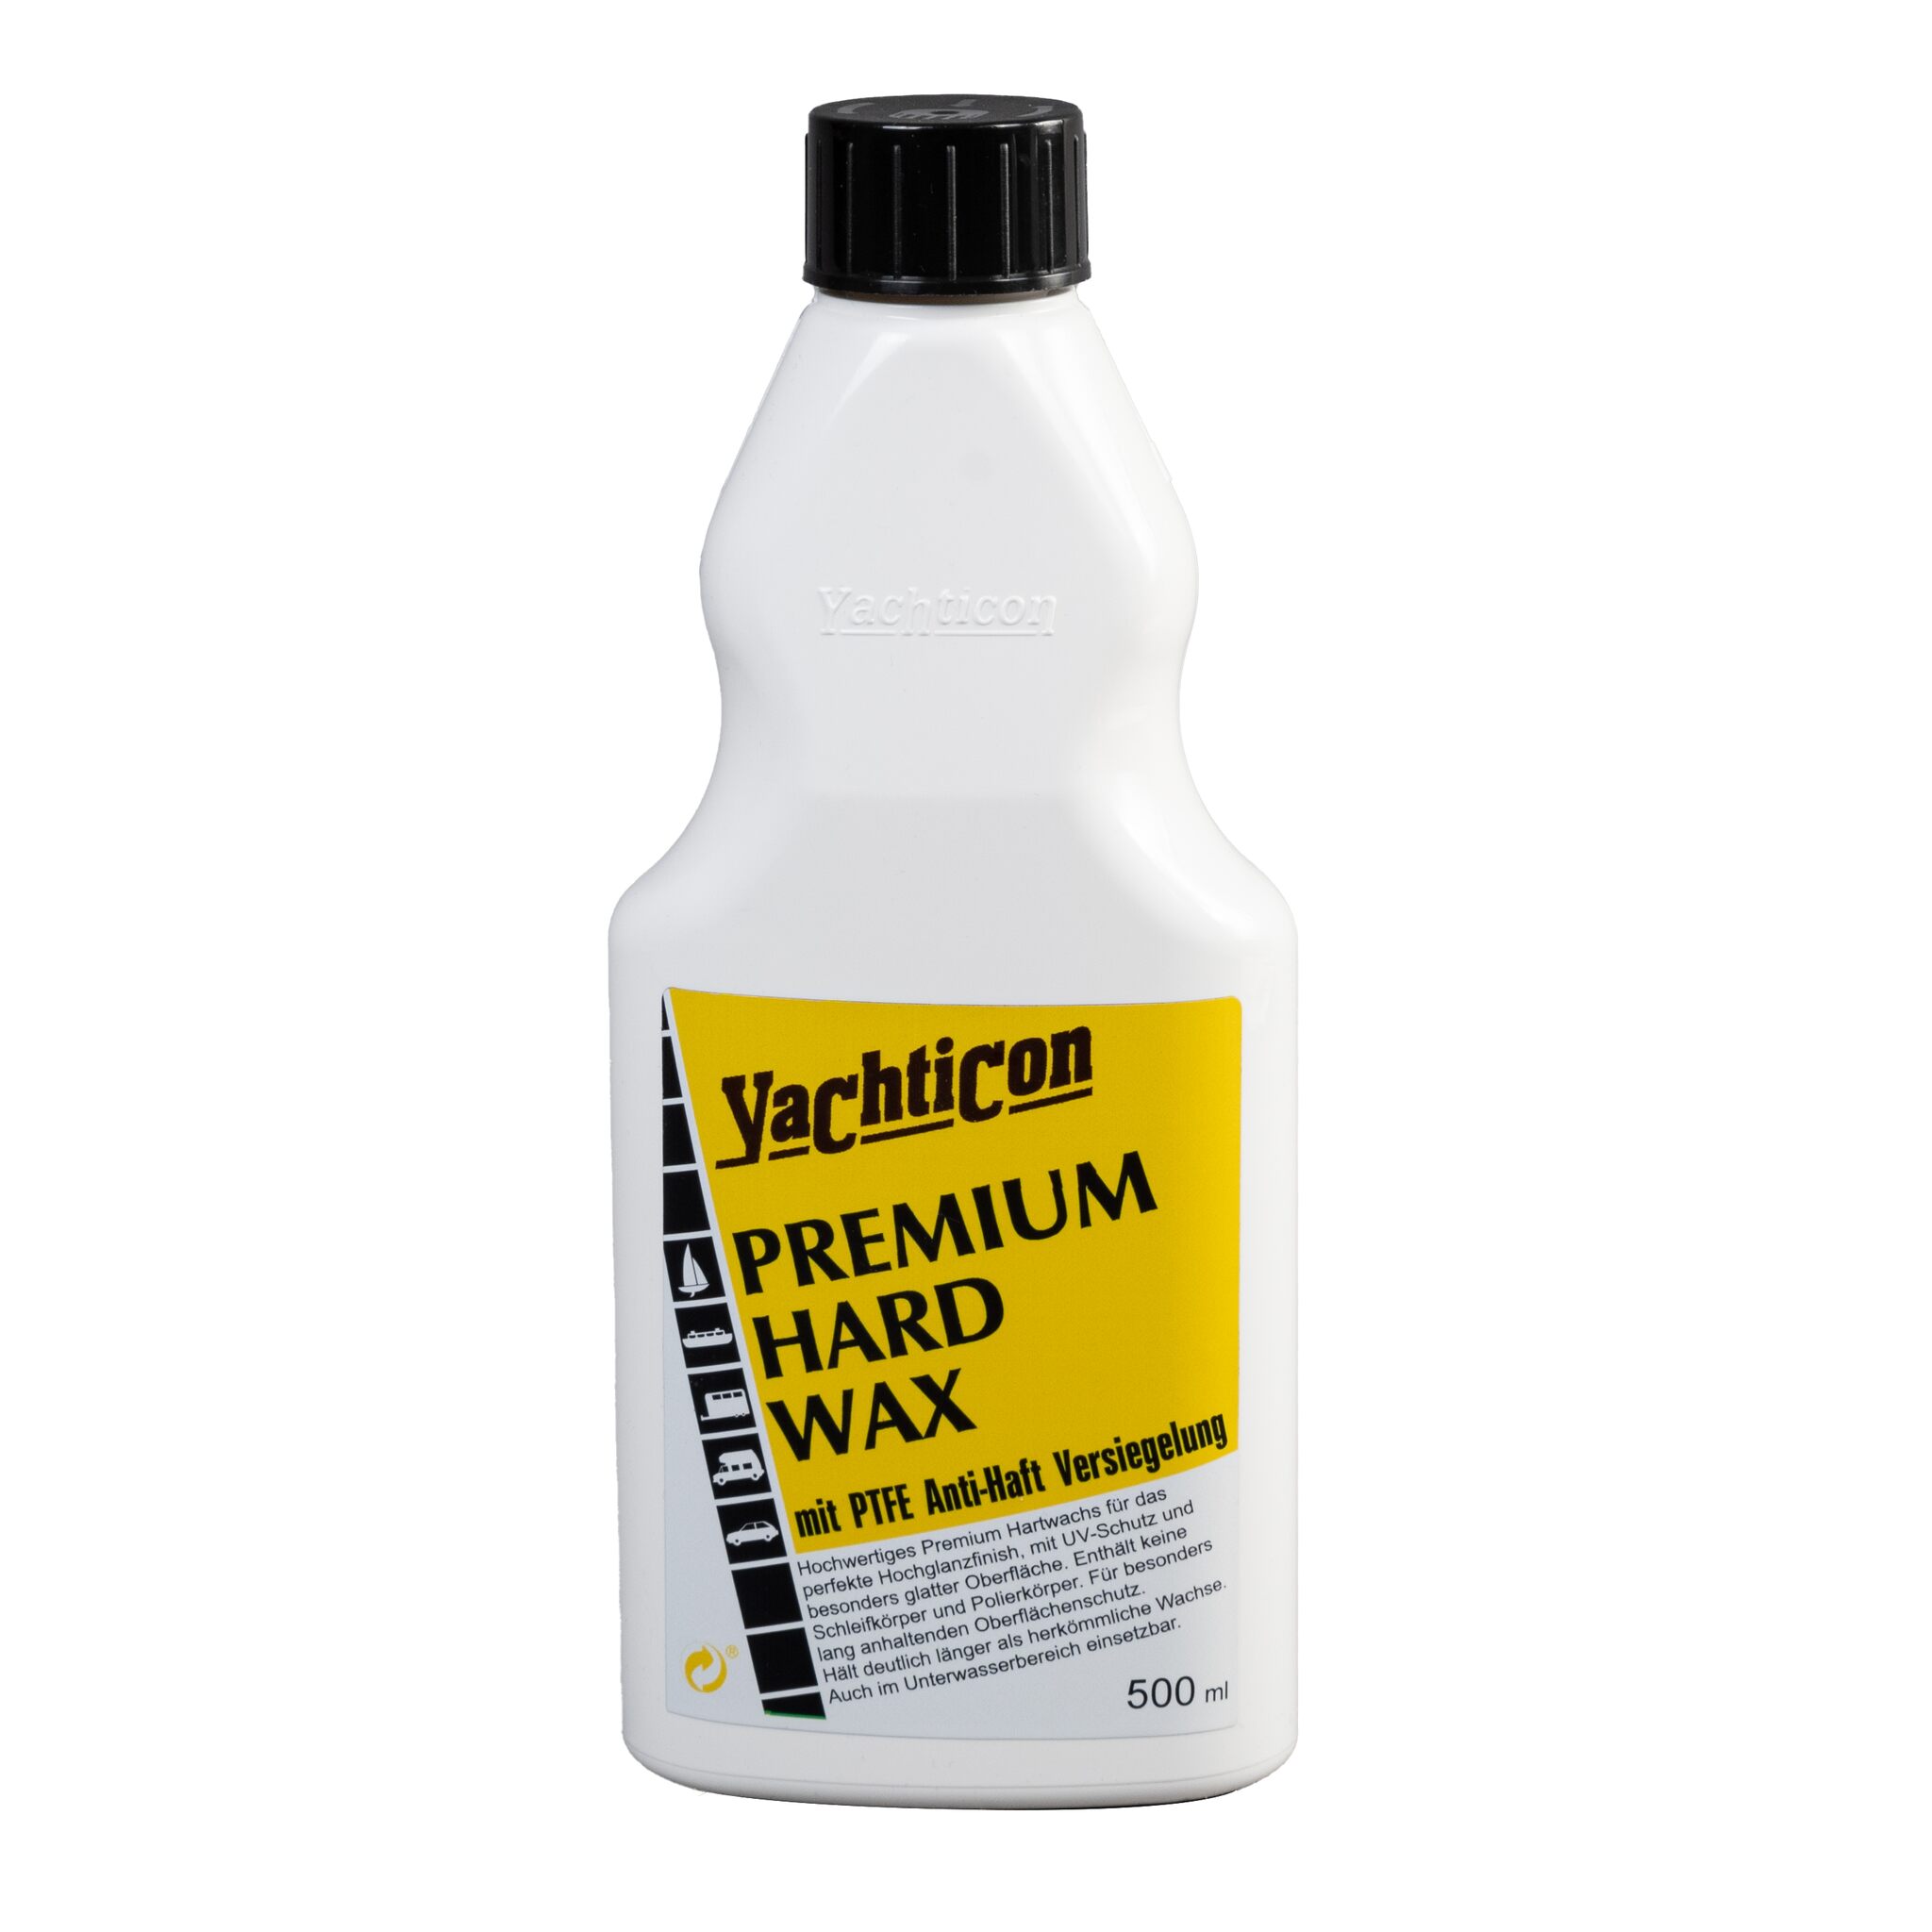 Yachticon Premium Hard Wax liquid